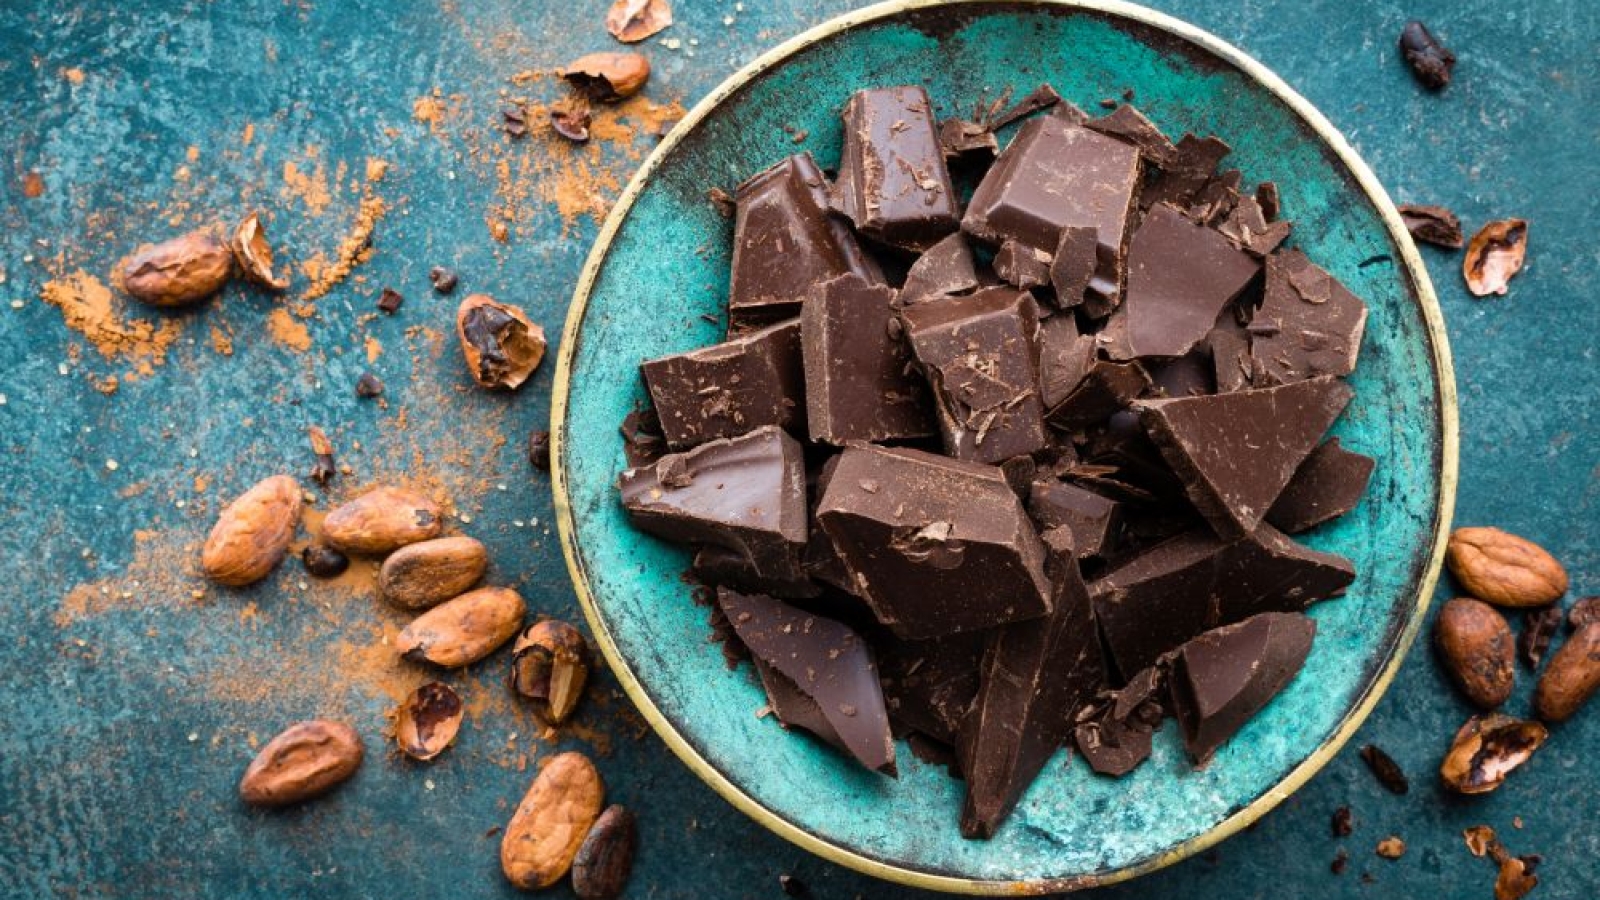 gorzka-czekolada-a-korzysci-dla-mozgu-jedzenie-czekolady-sprzyja-koncentracji-i-skupieniu